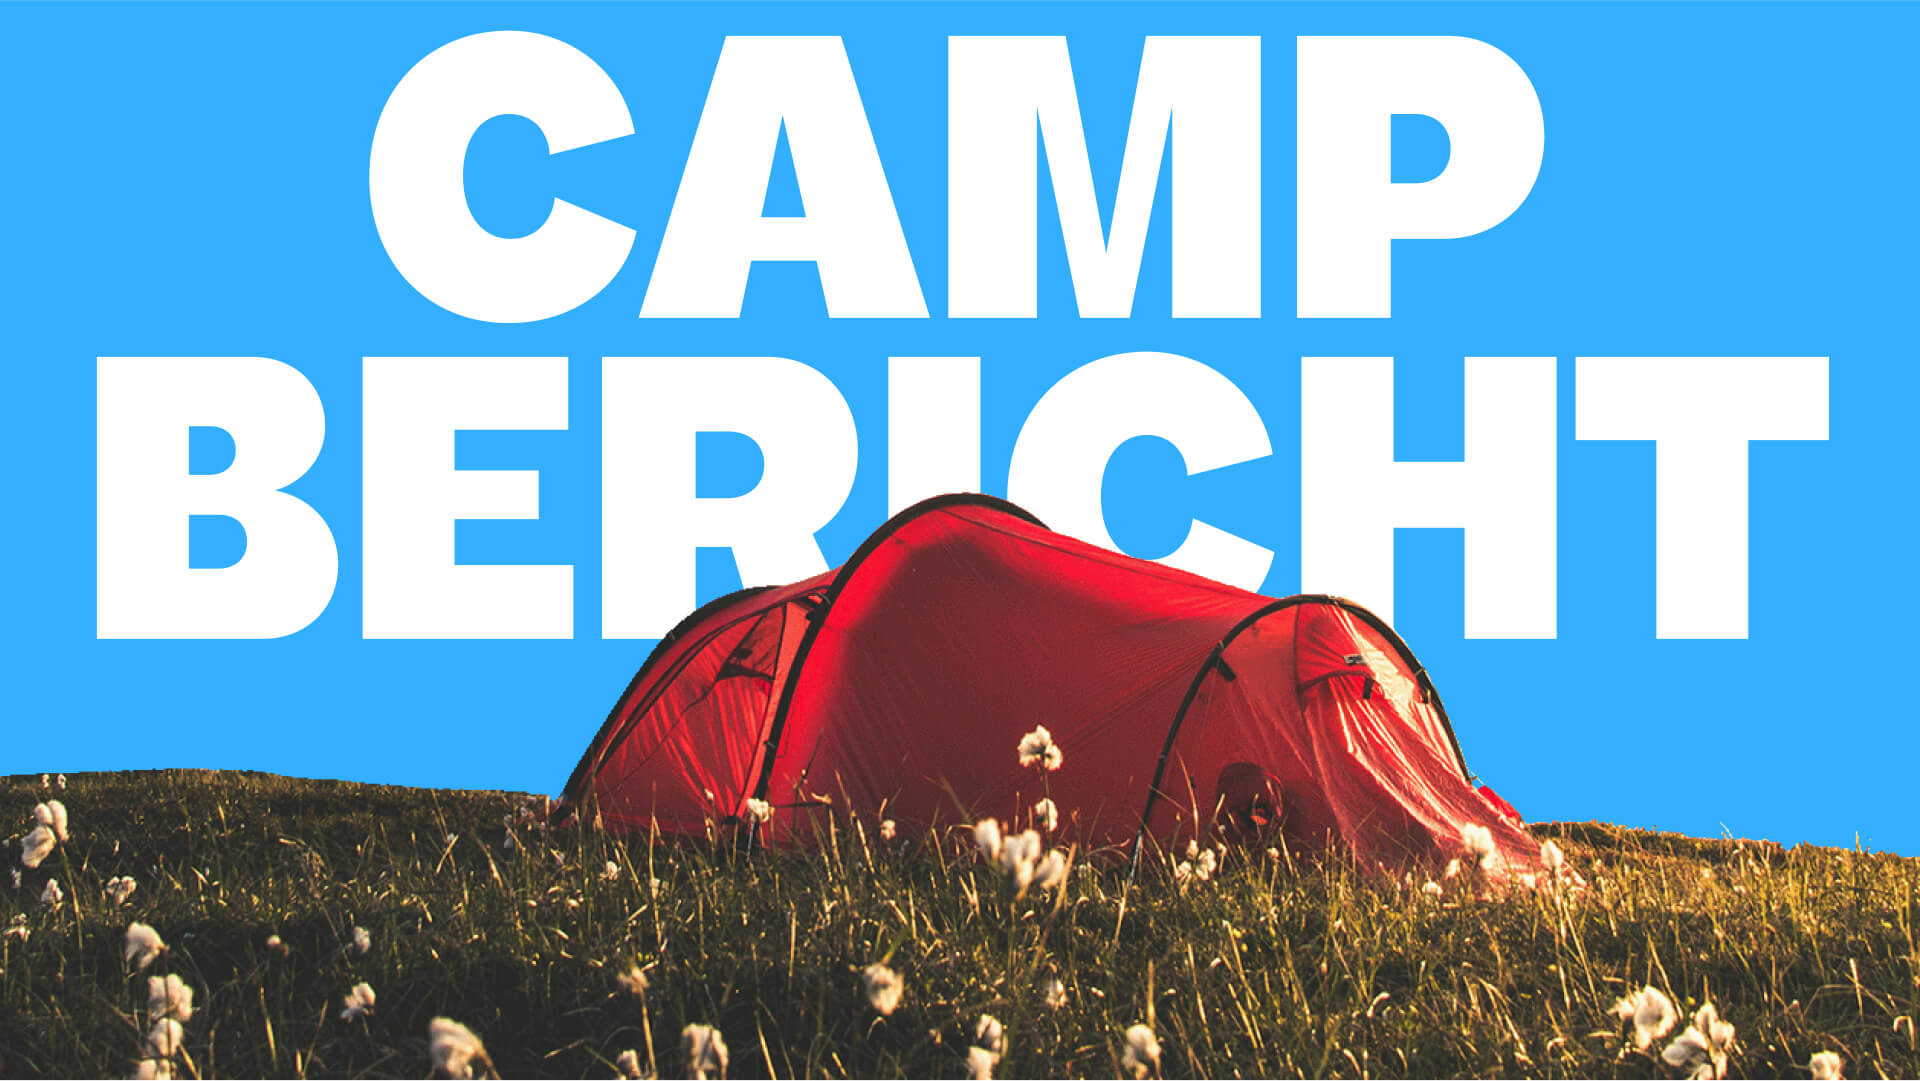 Ein rotes Zelt auf einer Wiese und der Beschriftung CAMP BERICHT im Hintergrund